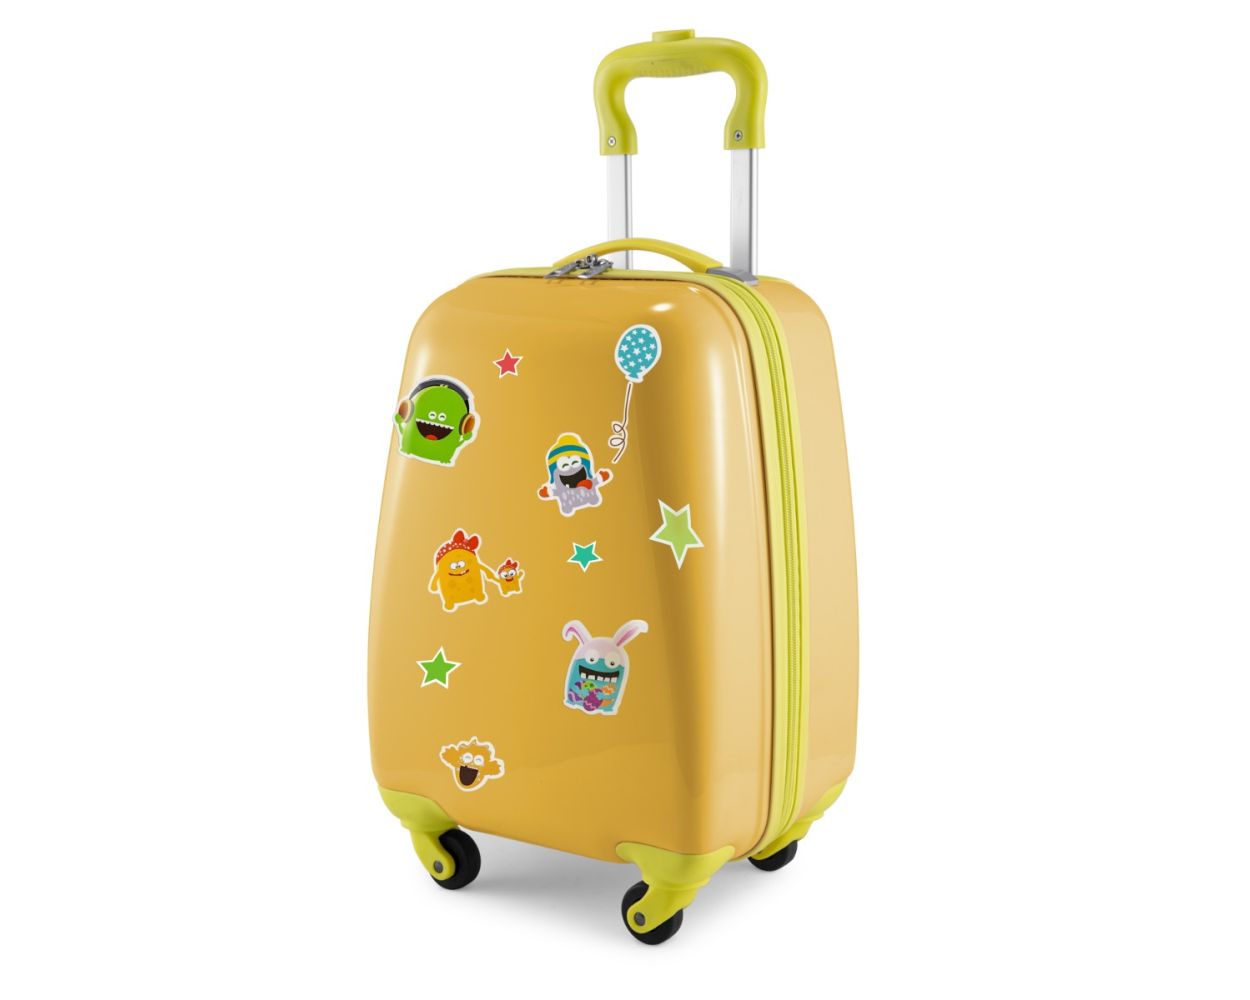 For Kids - Kindergepäck + reflektierende Aufkleber Monster, Kinderkoffer,  Hartschalenkoffer für Kinder, Handgepäck, 24 Liter, Gelb